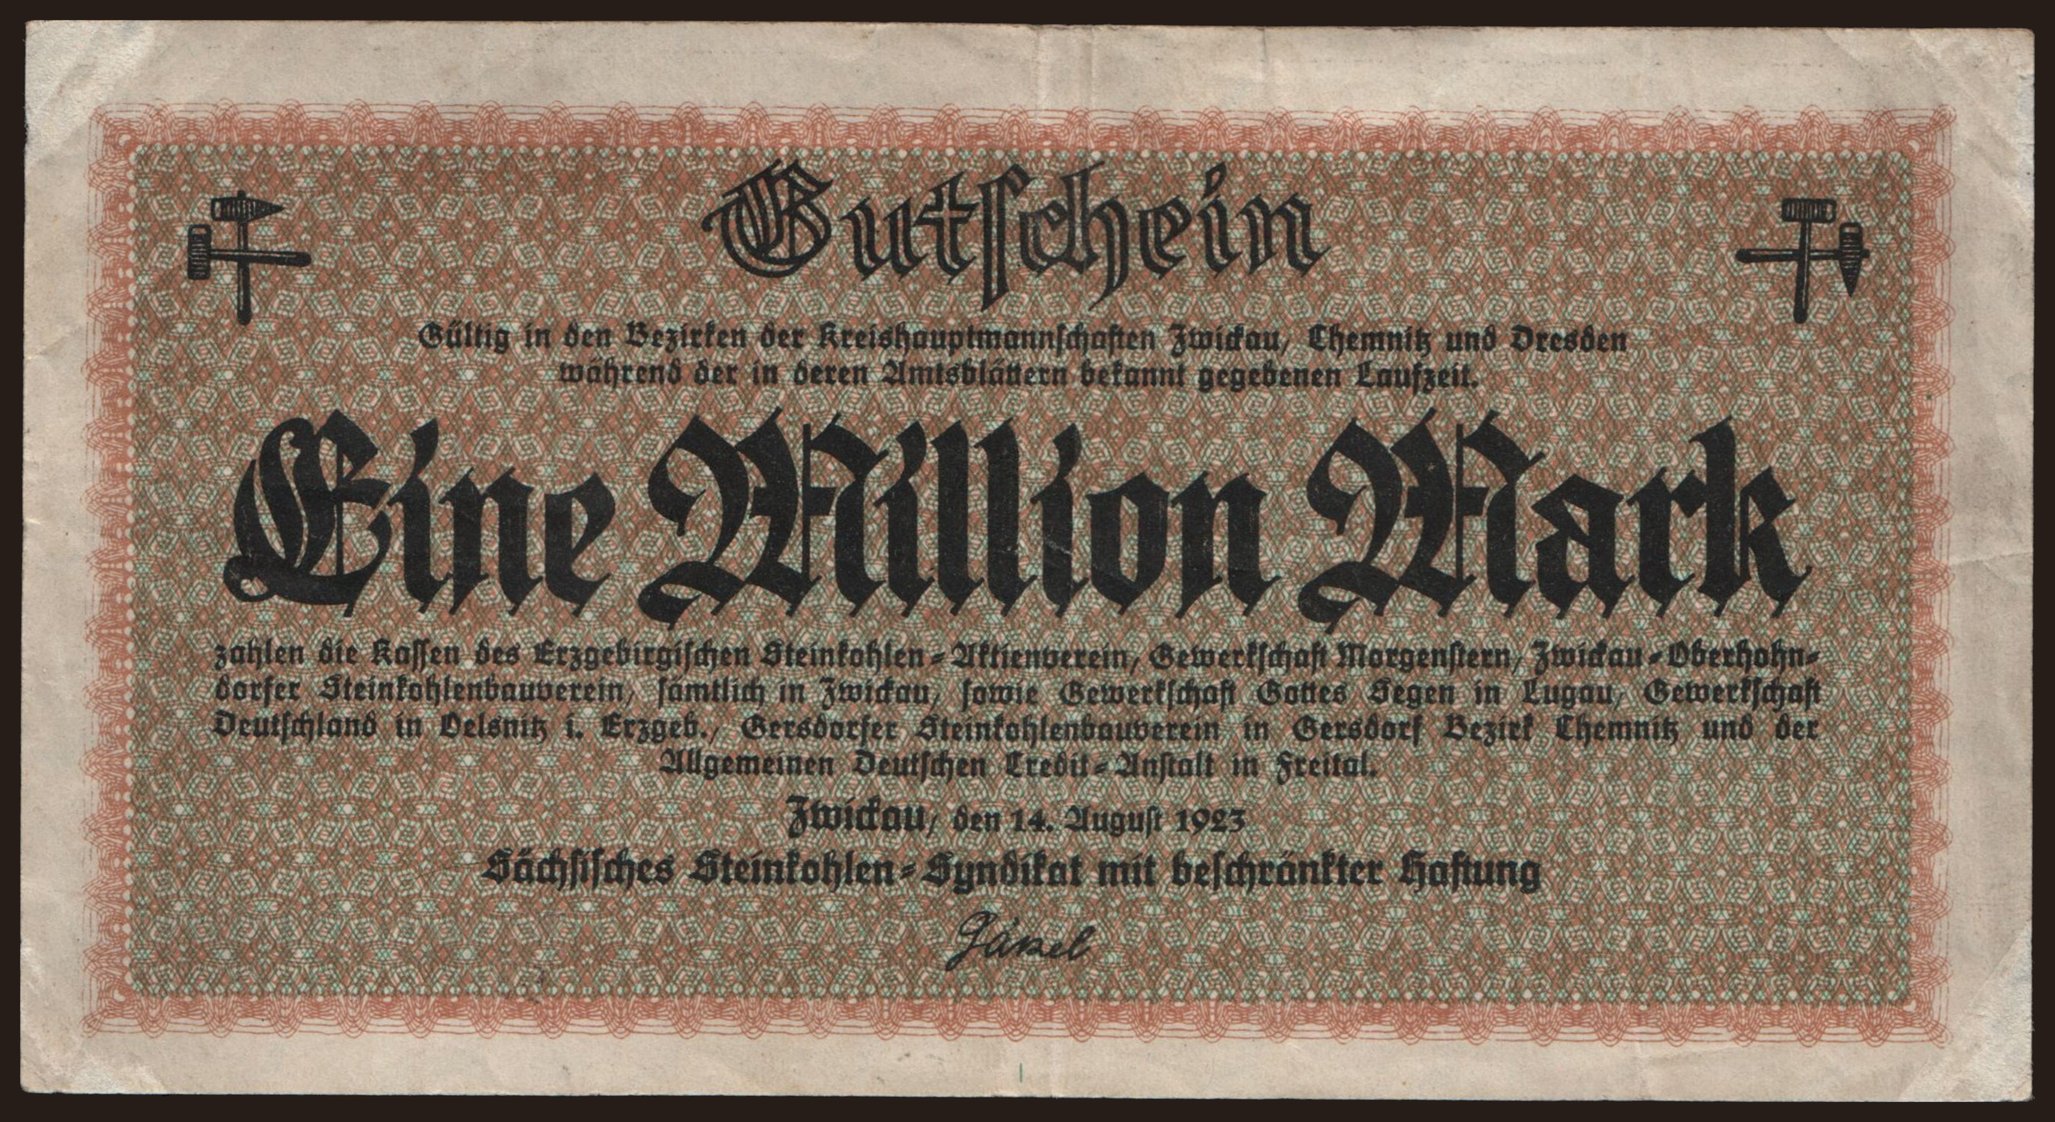 Zwickau/ Sächsisches Steinkohlen-Syndikat m.b.H., 1.000.000 Mark, 1923